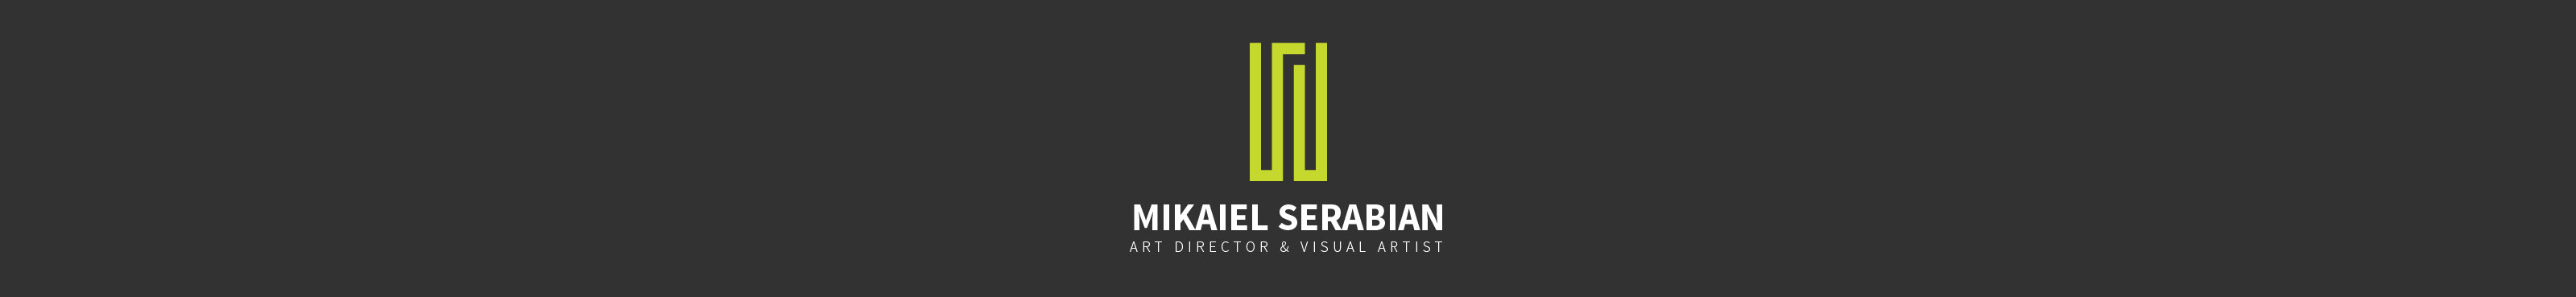 Profilbanneret til Mikaiel Serabian